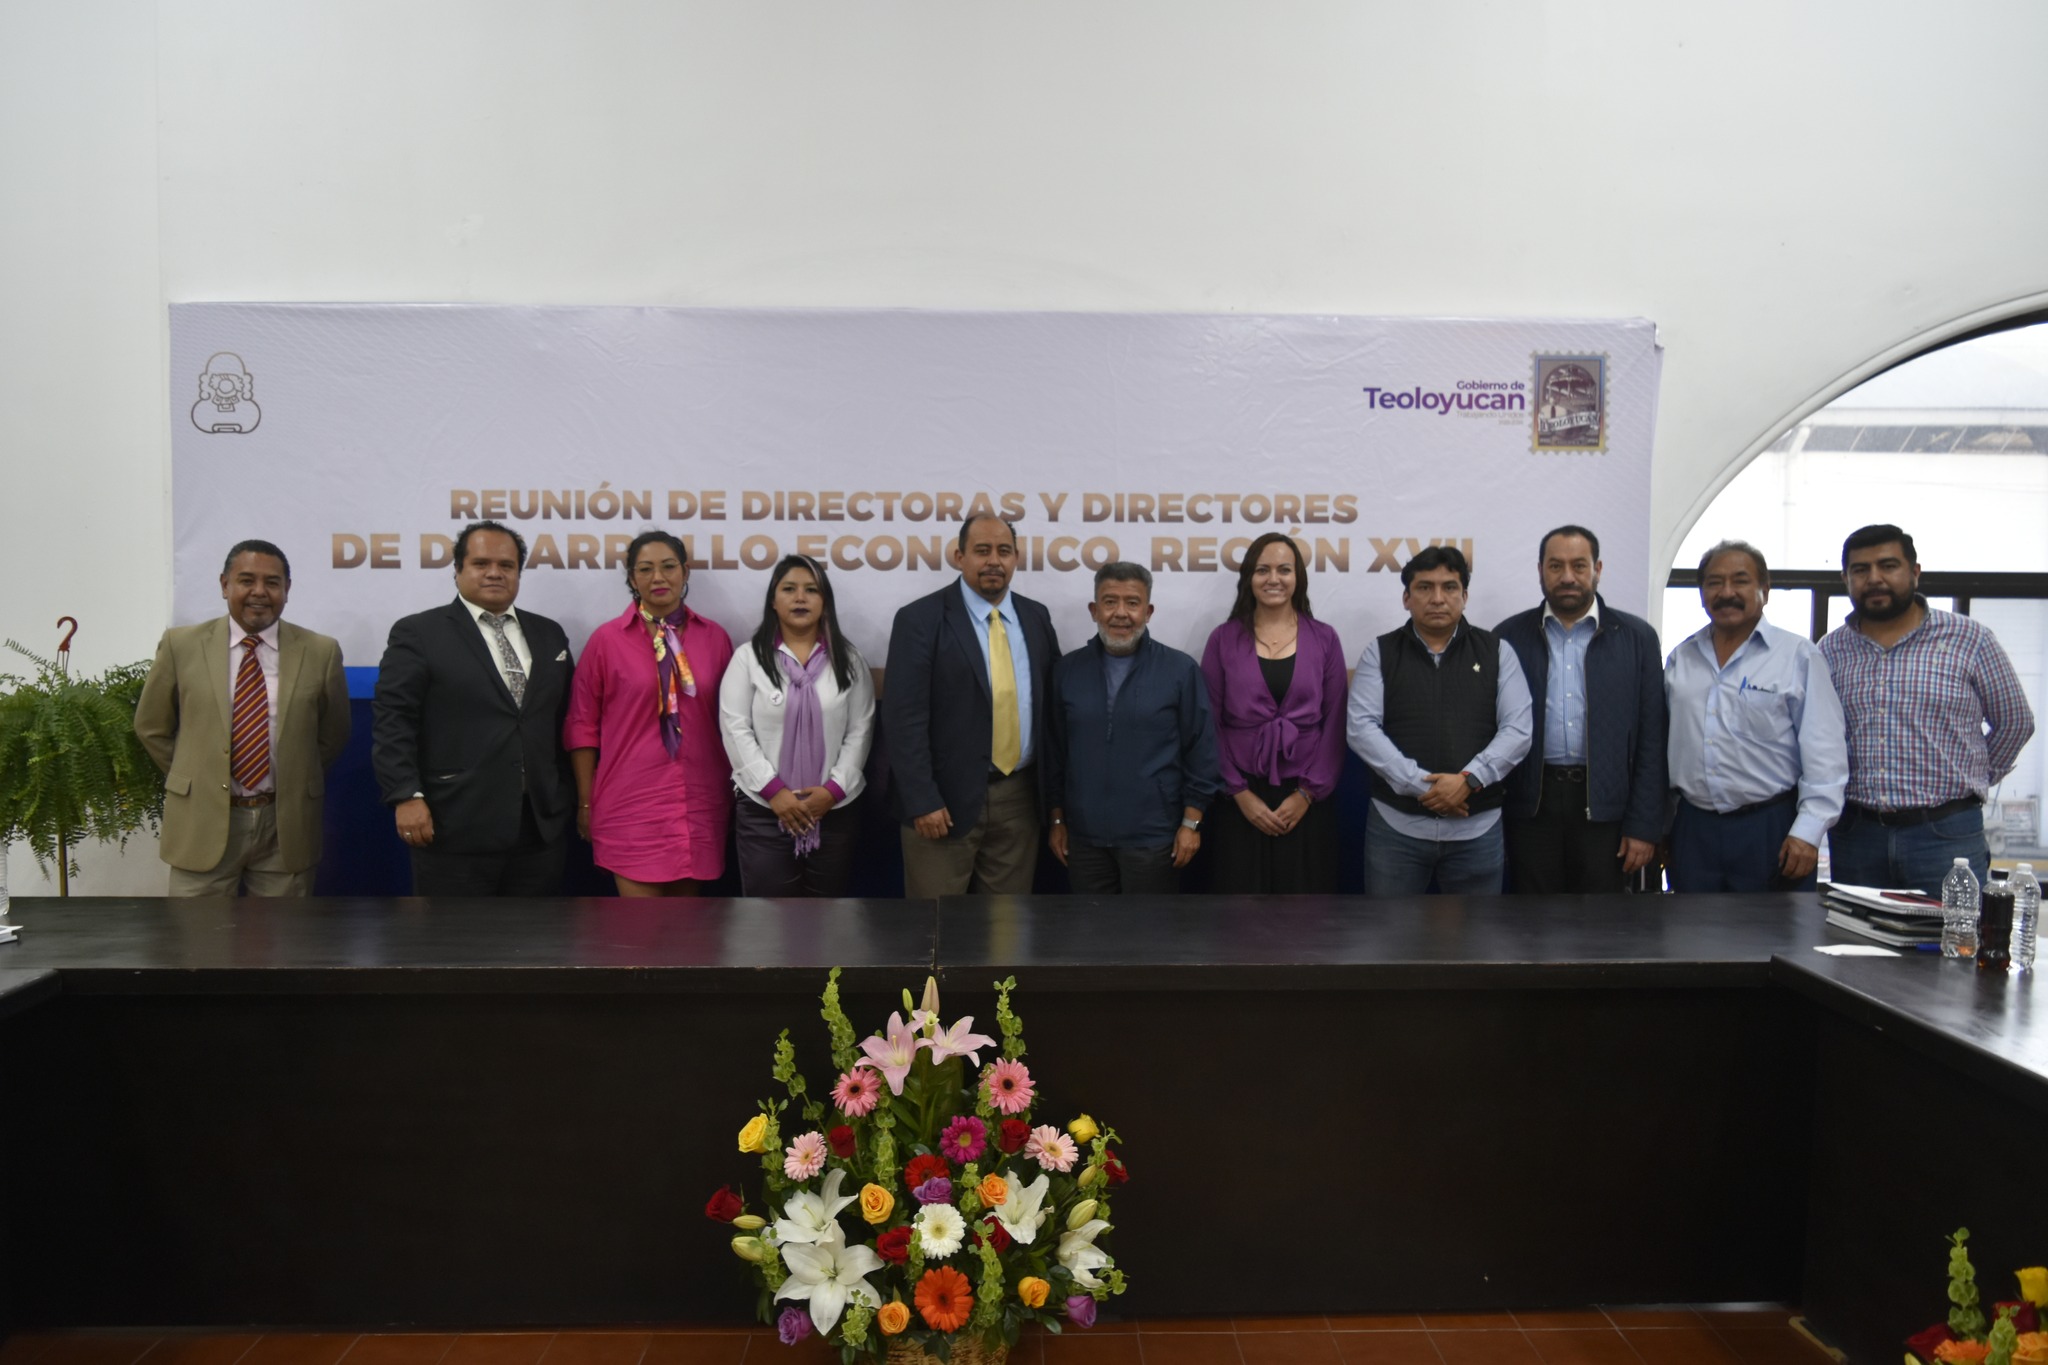 Reunión de Directoras y Directores de Desarrollo Económico Región XVII